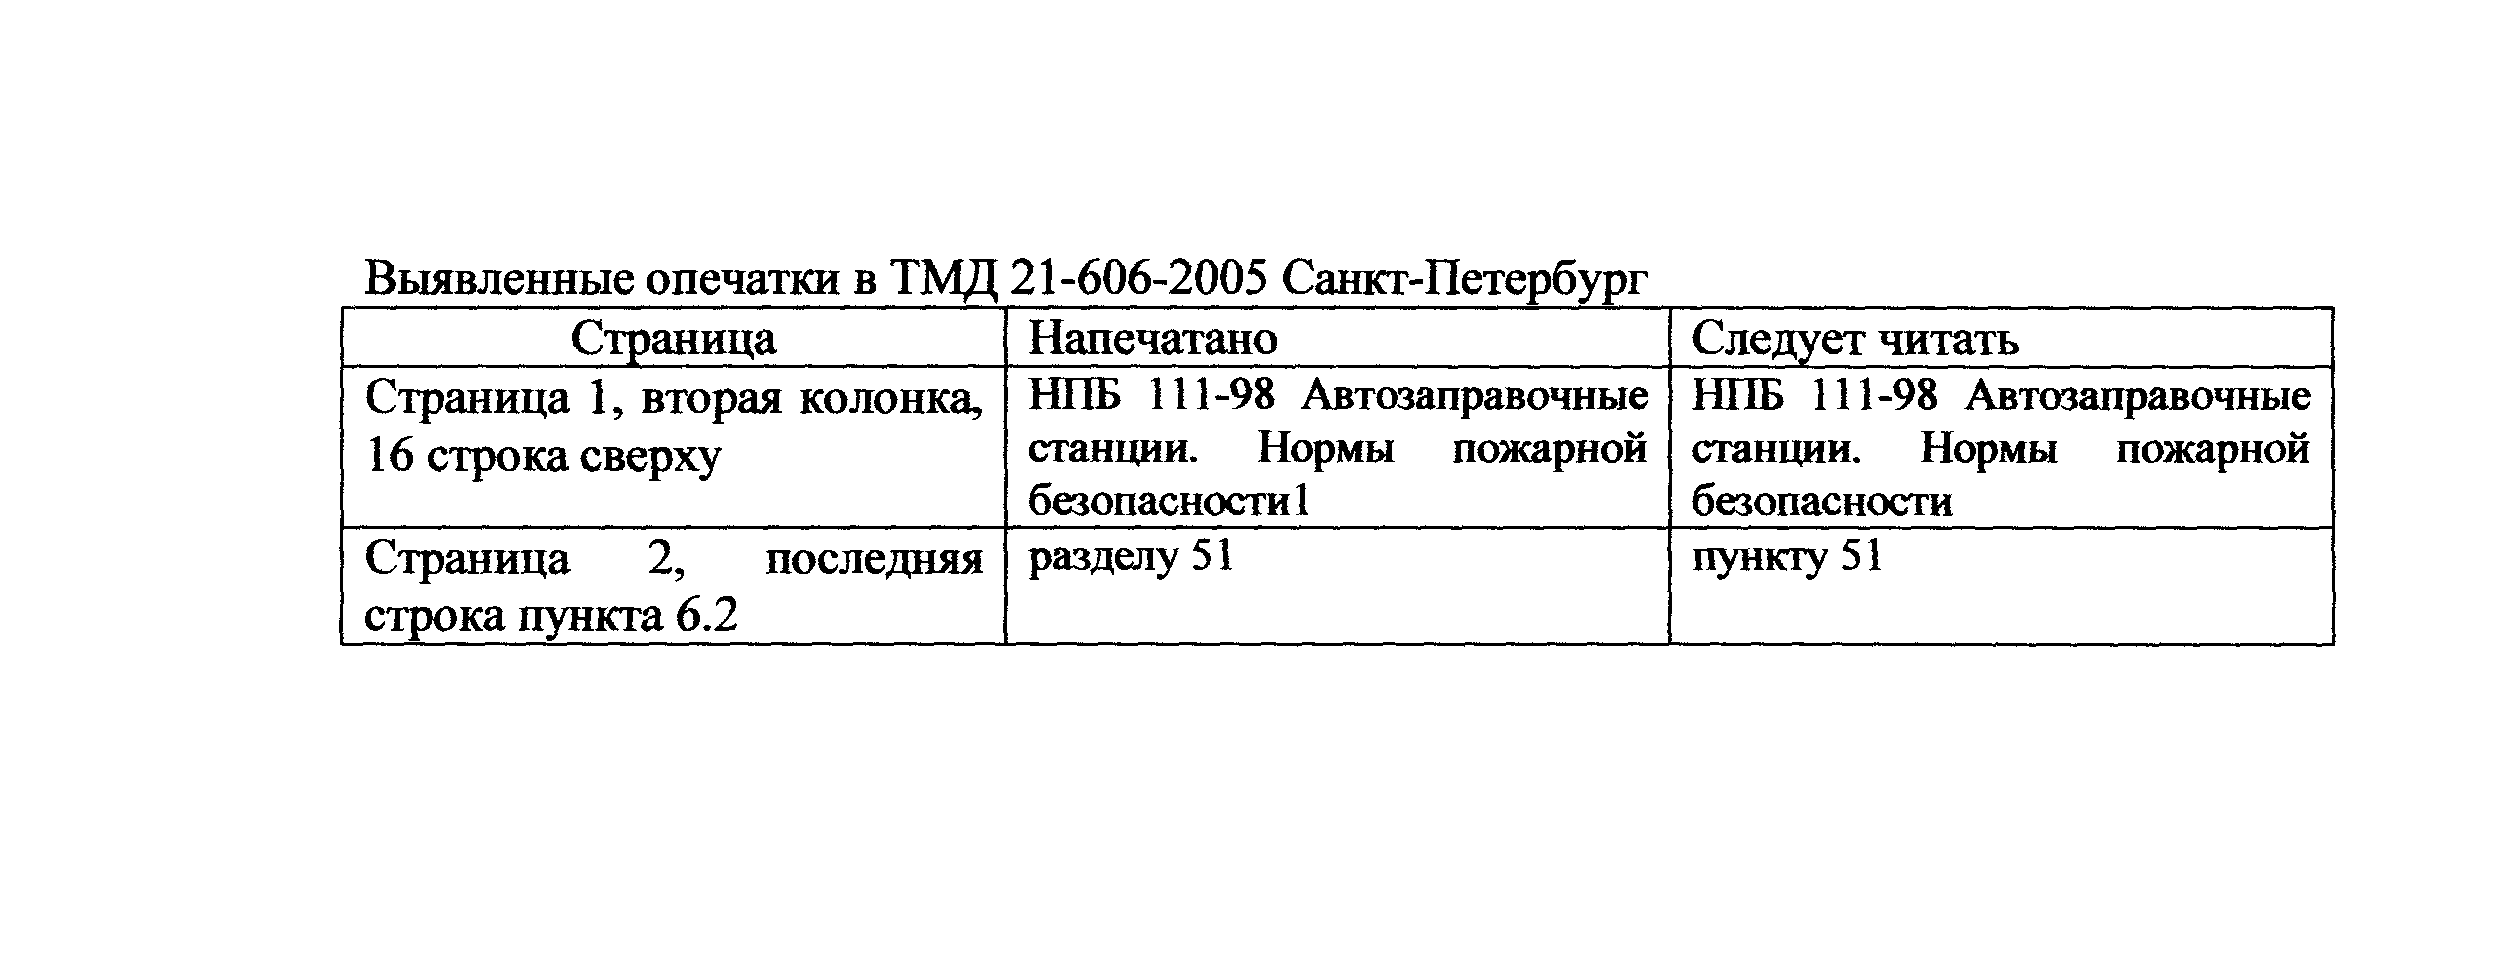 ТМД Санкт-Петербург 21-606-2005